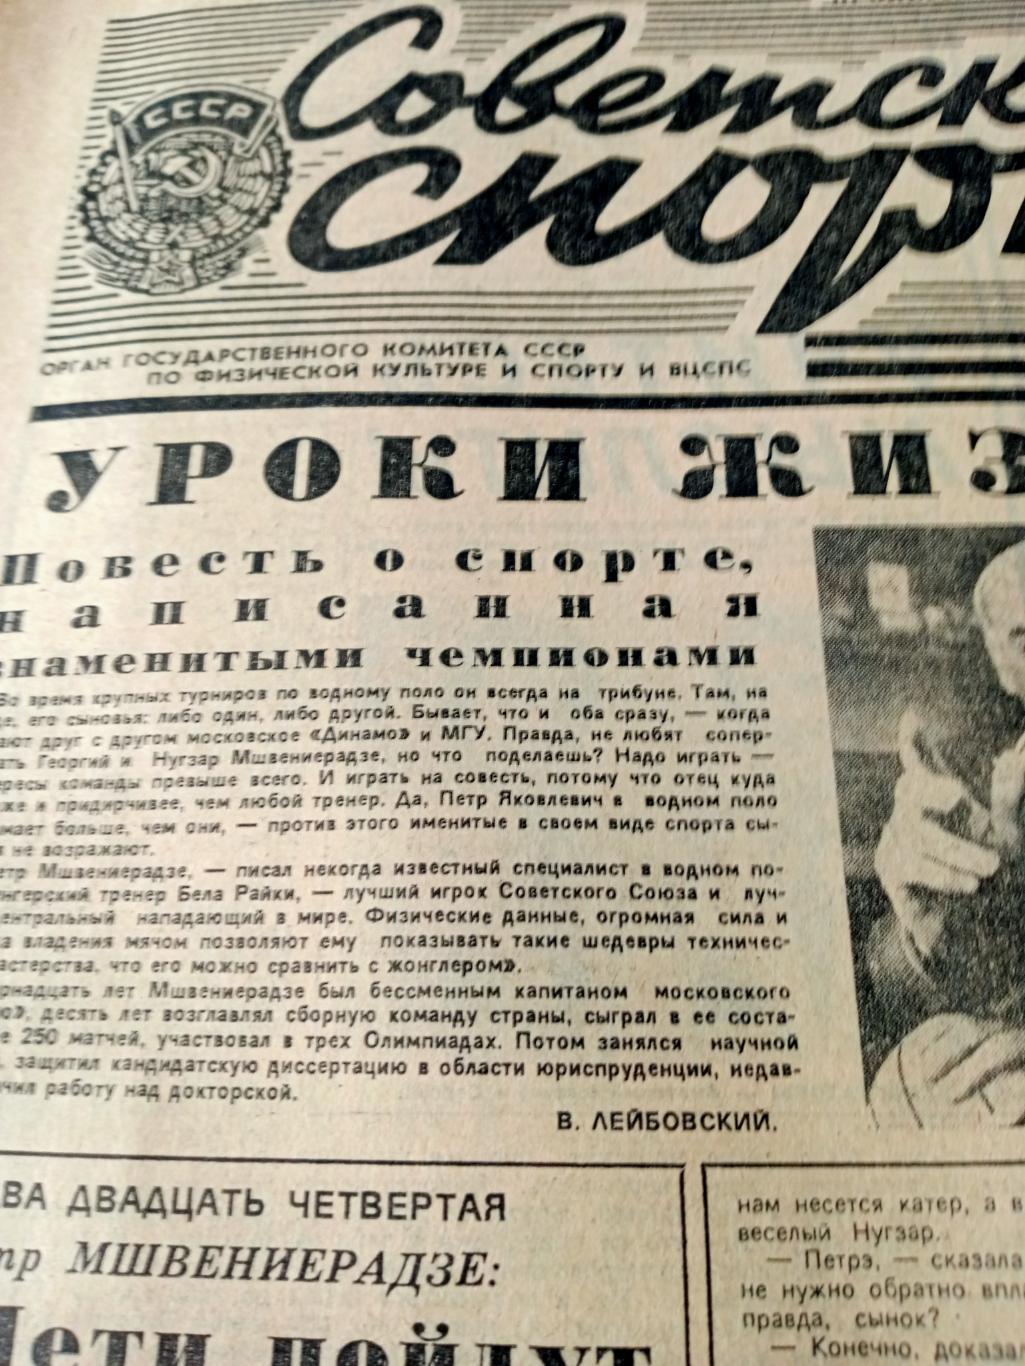 Советский спорт. 1985 год. 20 апреля. Уроки жизни - П. Мшвениерадзе